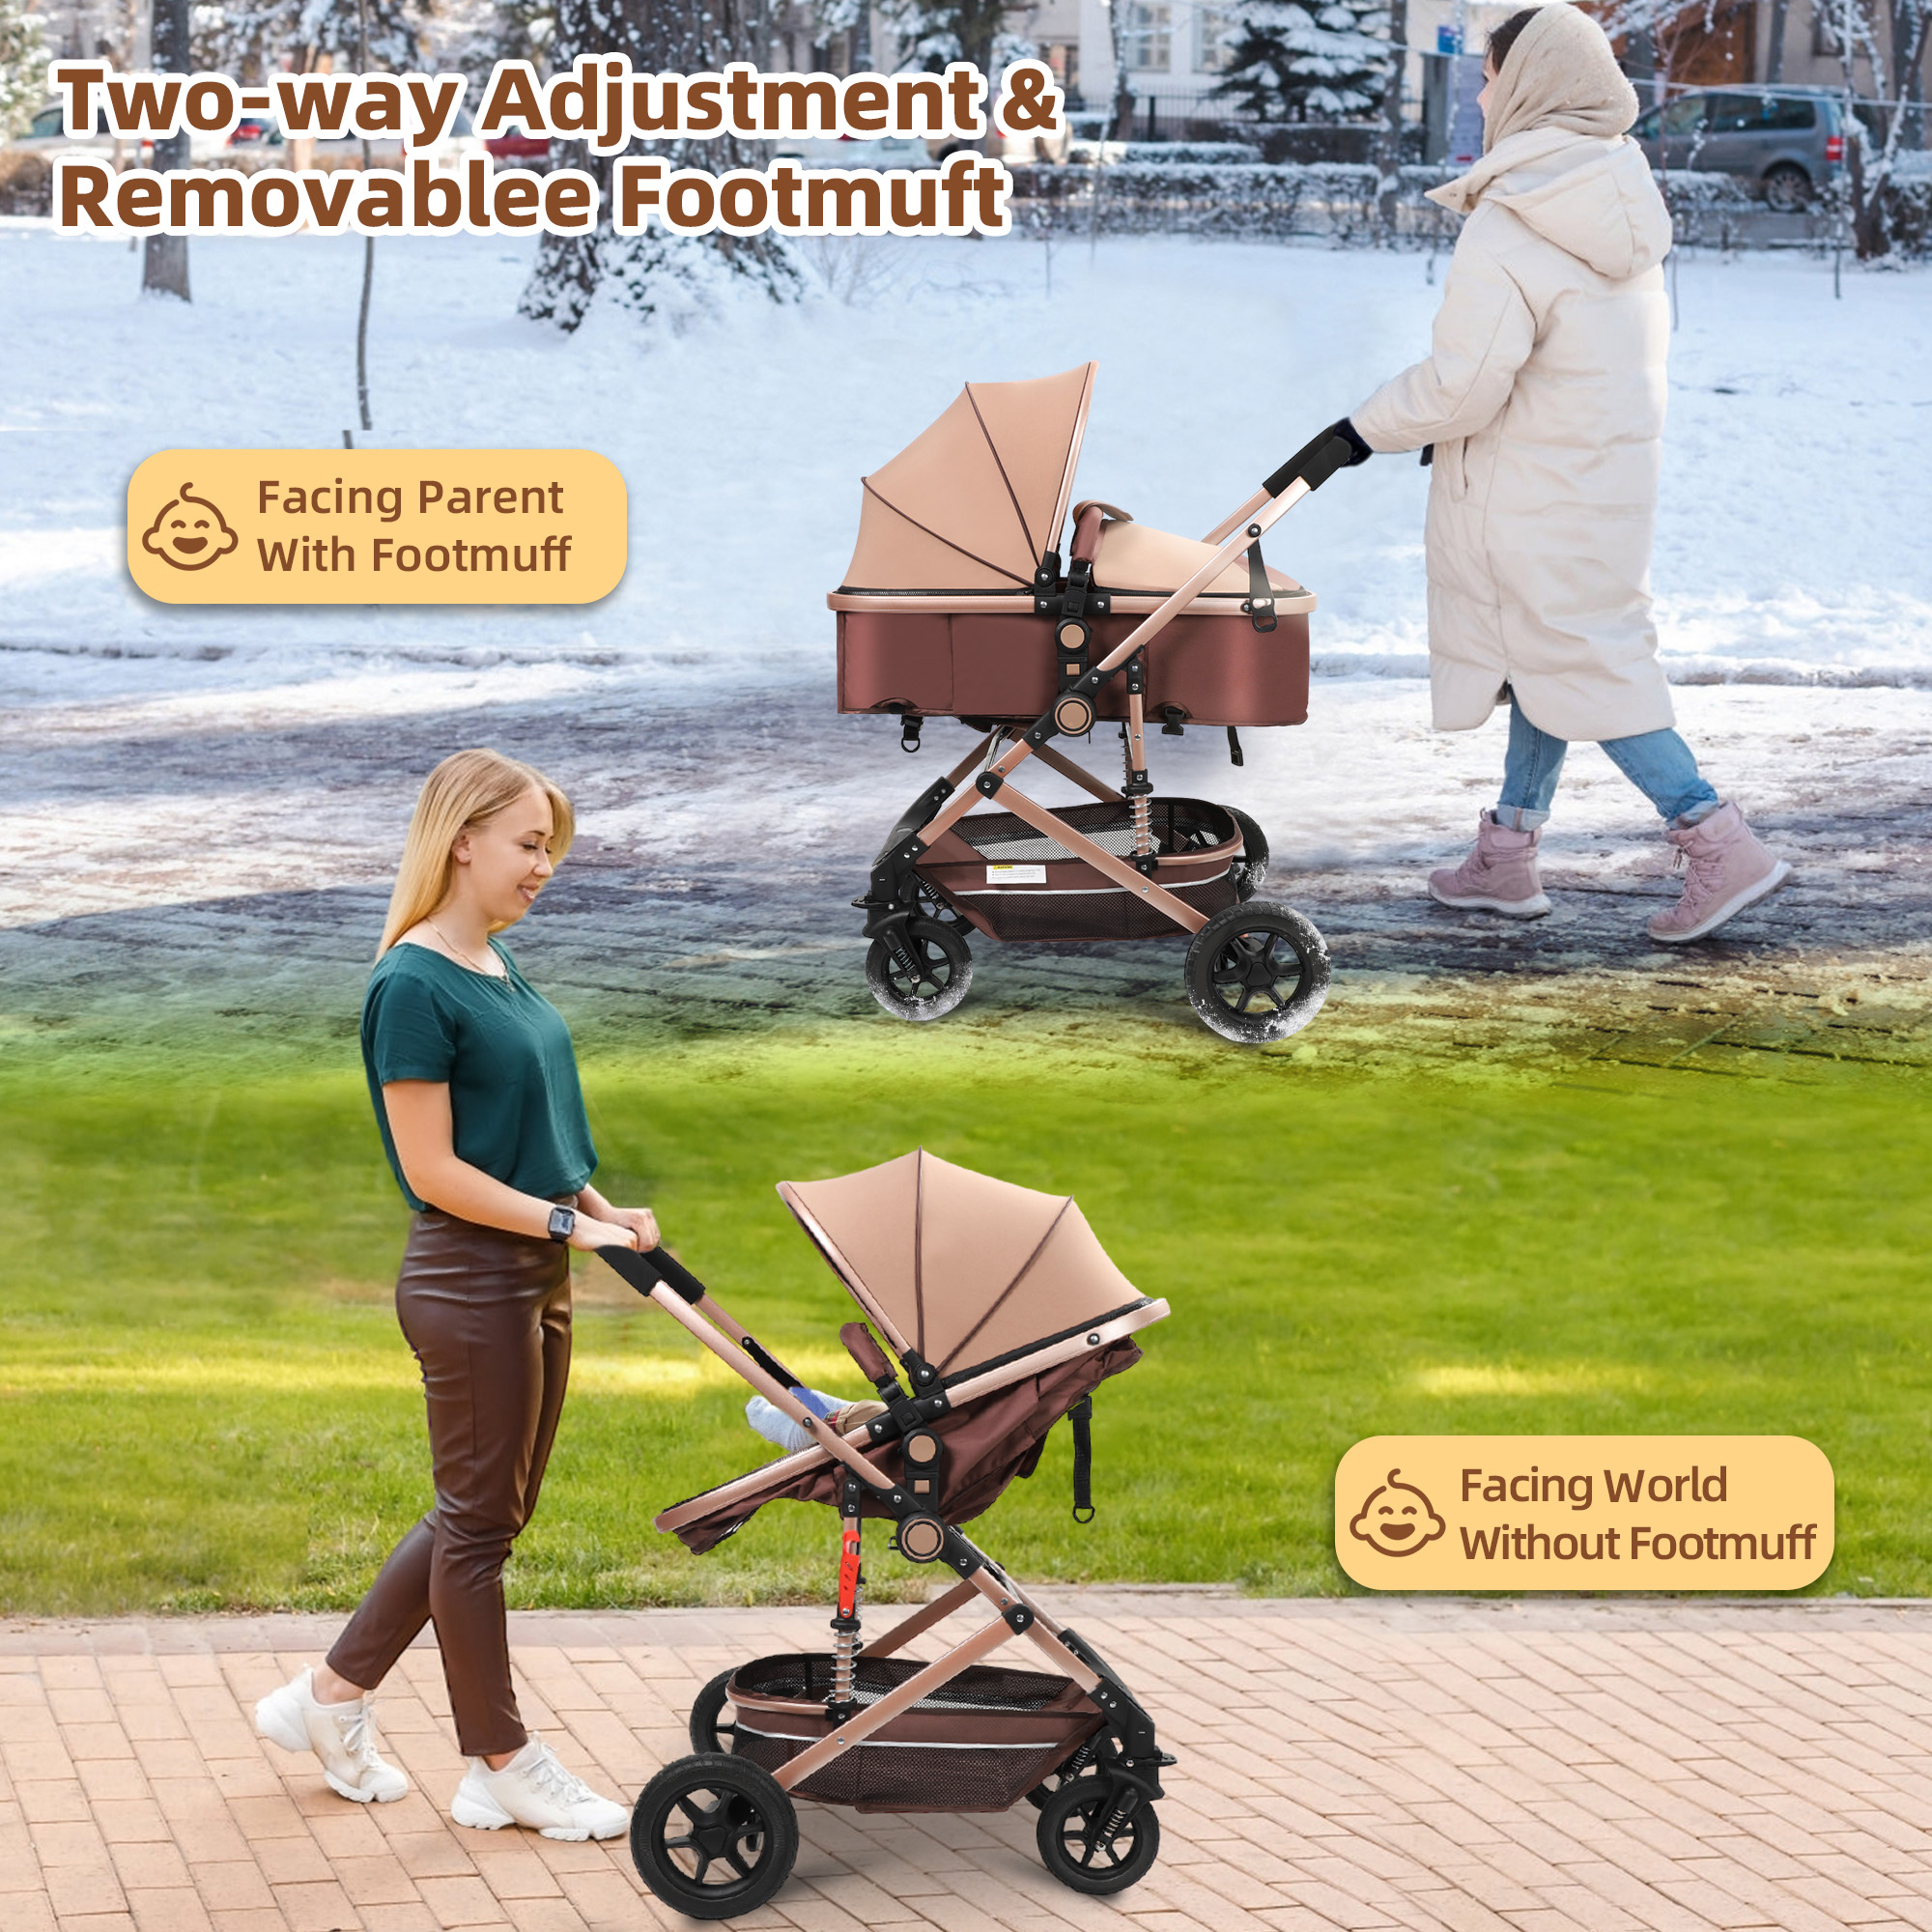 Vomeast Baby Stroller, Foldable Baby Stroller Reversible Bassinet, Travel Stroller for Newborn Baby, Khaki - image 3 of 10